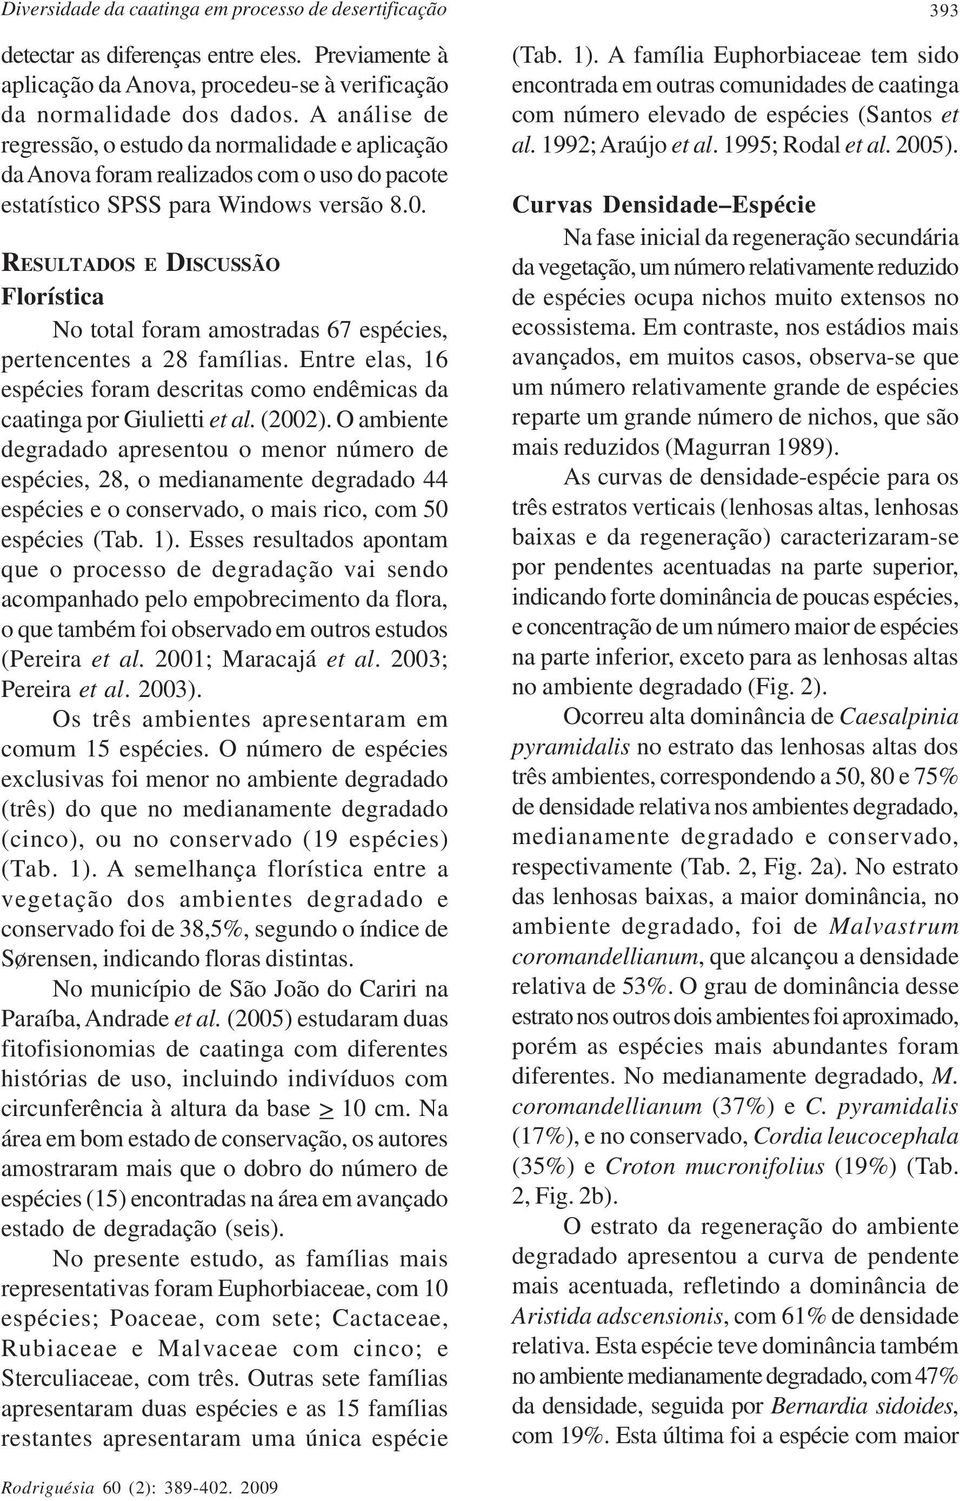 RESULTADOS E DISCUSSÃO Florística No total foram amostradas 67 espécies, pertencentes a 28 famílias. Entre elas, 16 espécies foram descritas como endêmicas da caatinga por Giulietti et al. (2002).